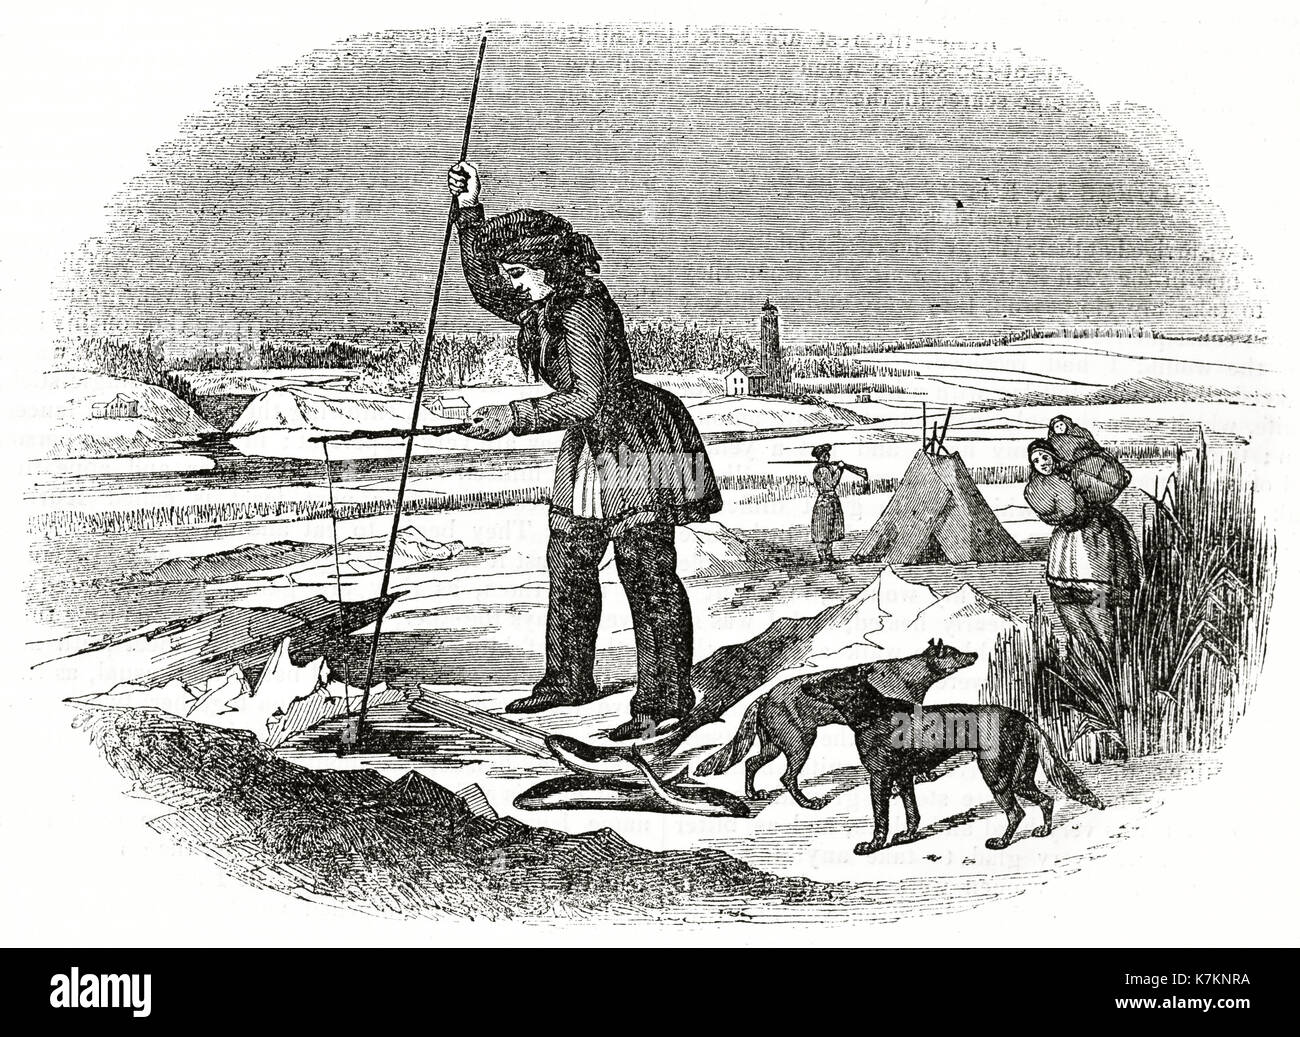 Vecchio vista di Chippewa nativo americana la pesca nel ghiaccio. Da autore non identificato, publ. su Penny Magazine, London, 1837 Foto Stock